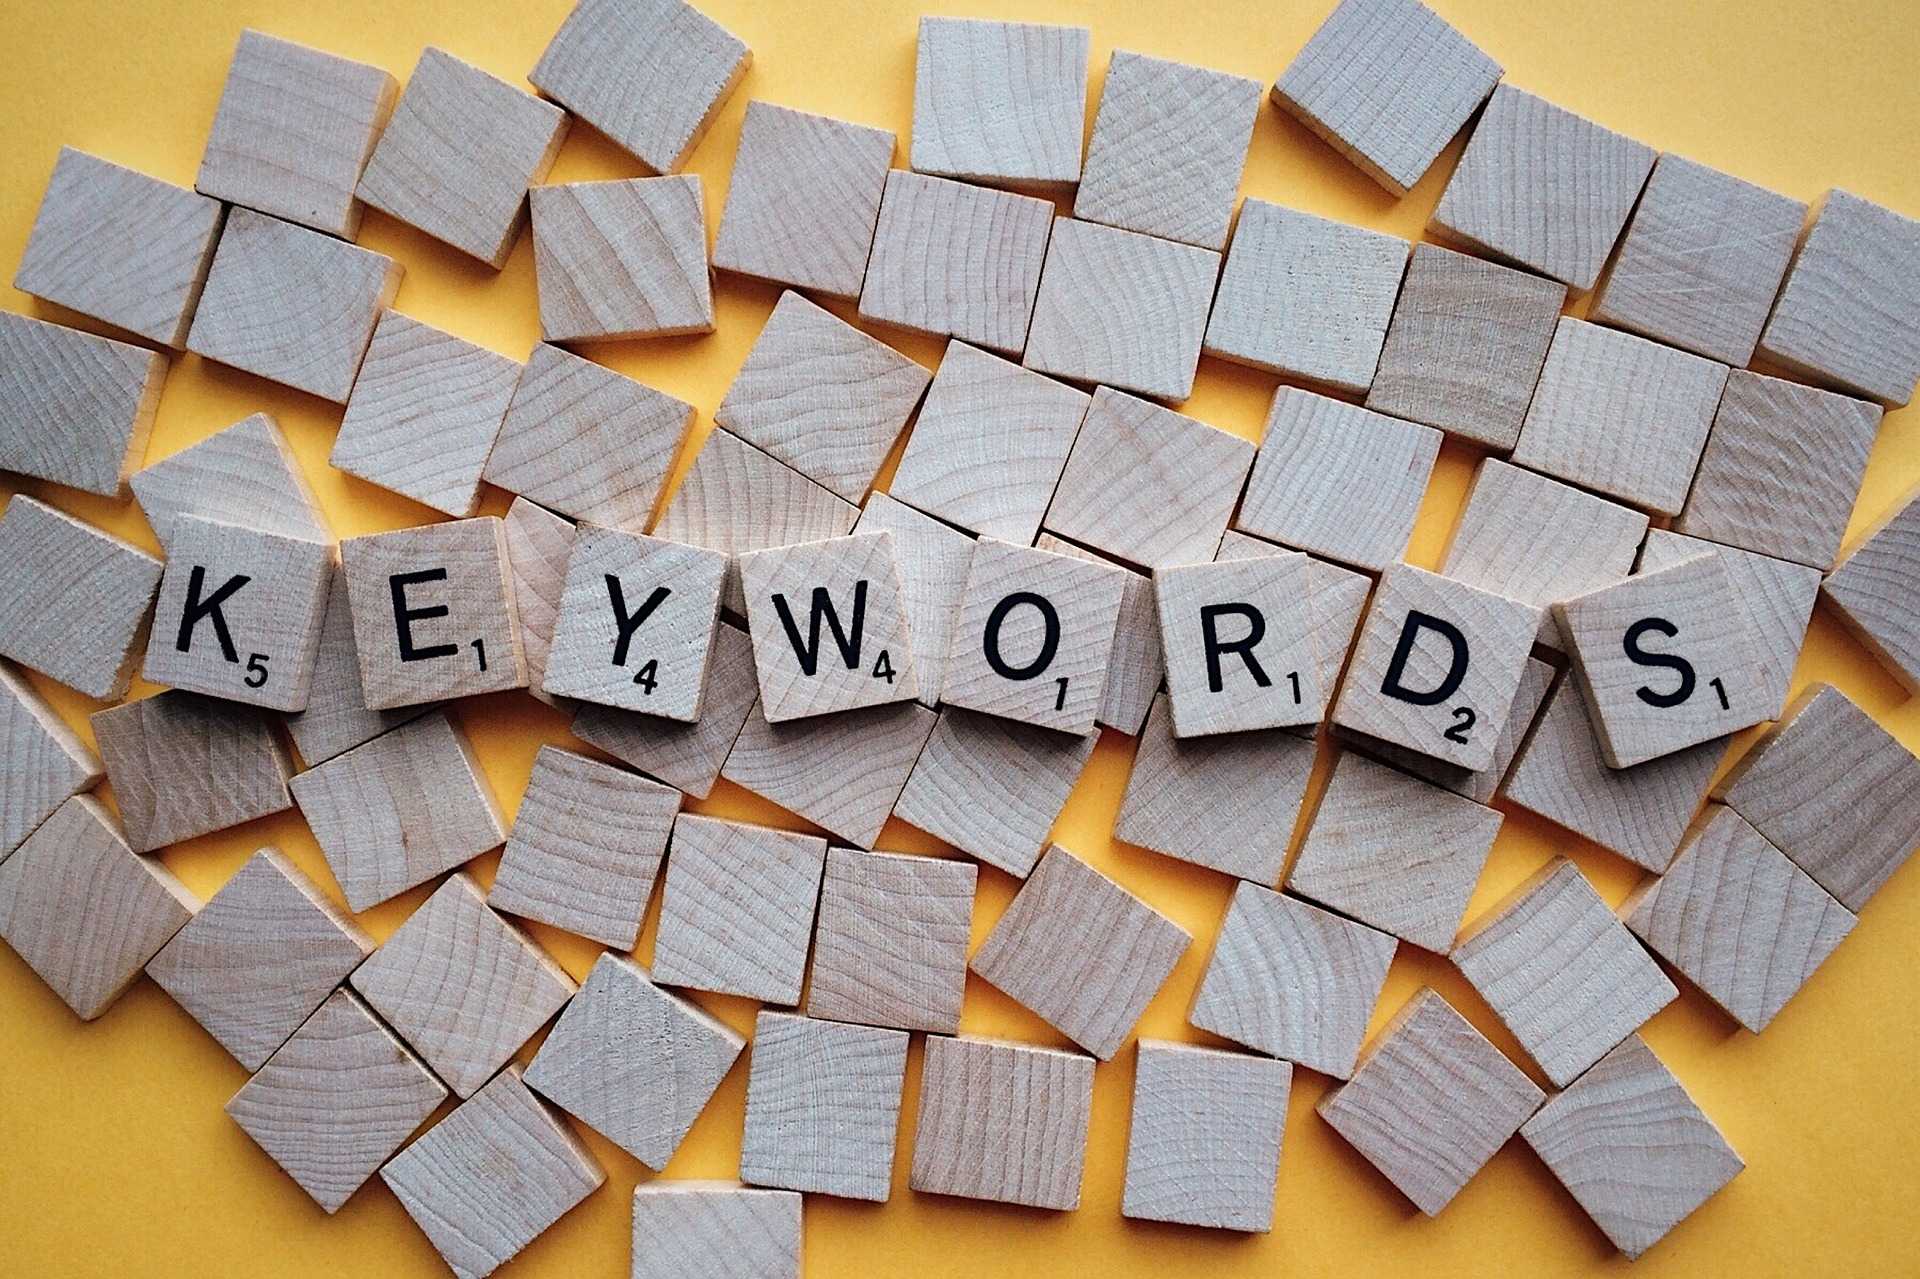 Termi anglisht Keyword nënkupton një ose më shumë fjalë që përdoruesit shkruajnë në motorët e kërkimit për të gjetur dhe konsultuar faqet e internetit të interesit të tyre